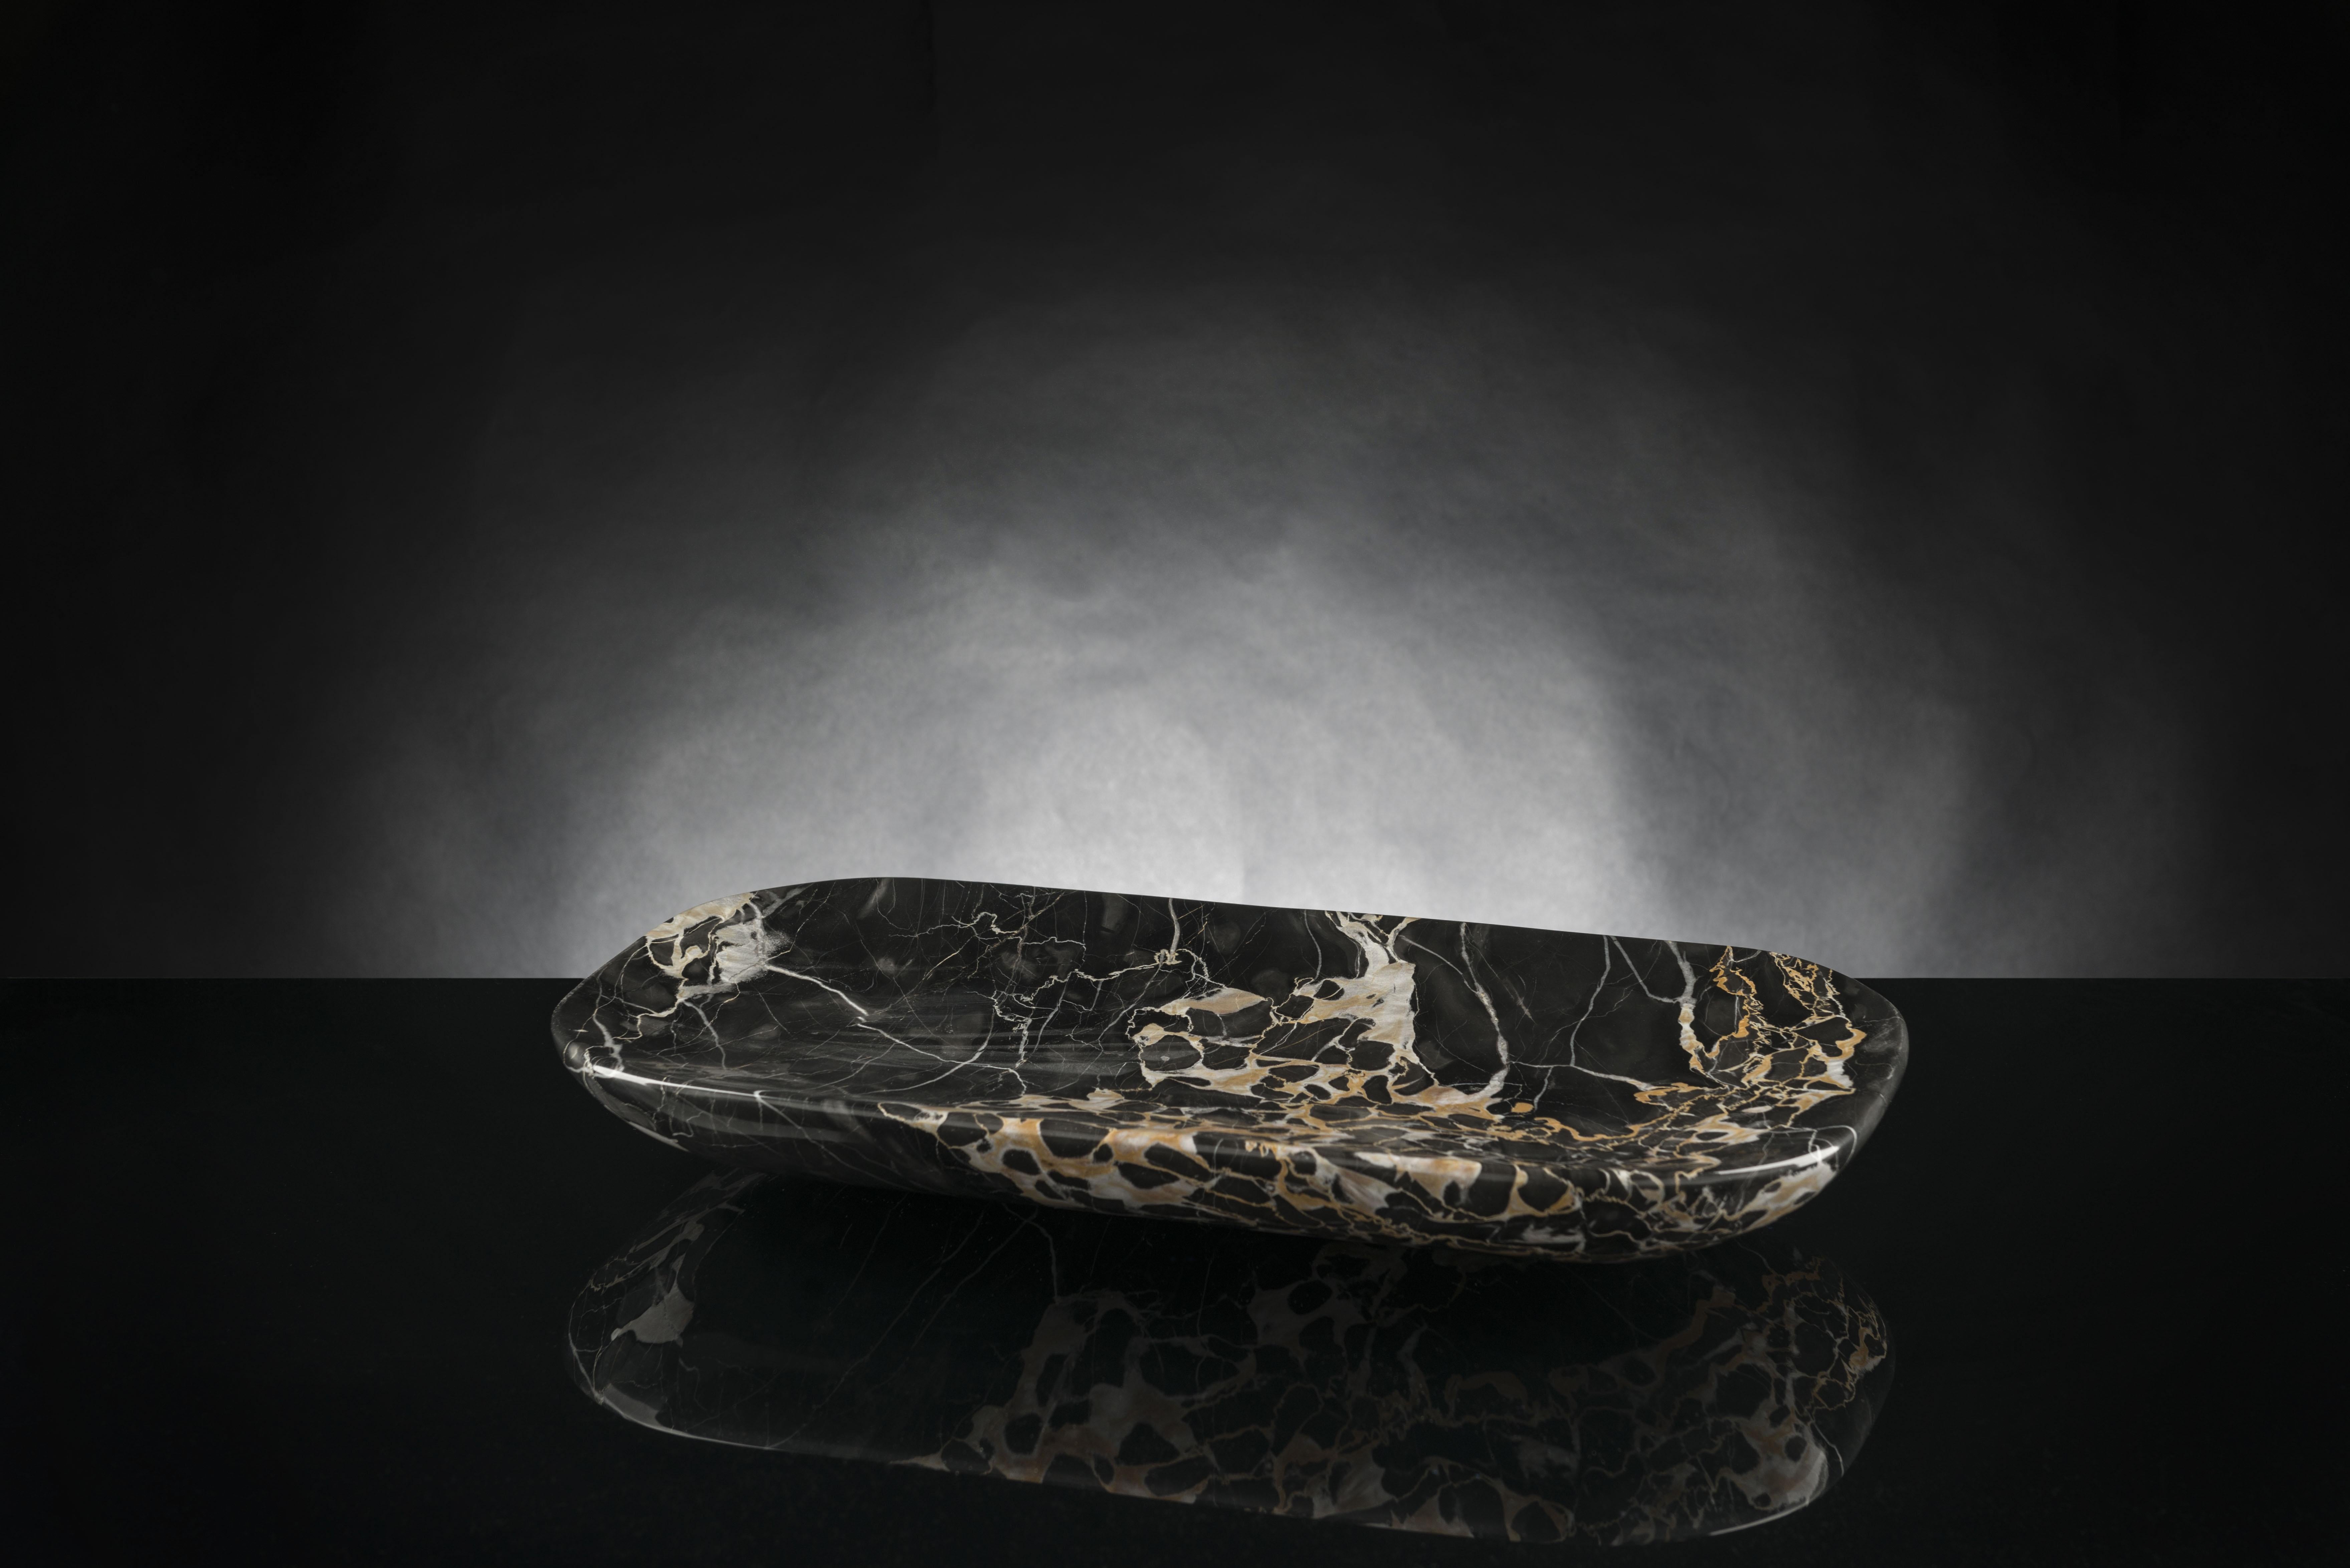 Plateau moderne en marbre de Portoro ou Portovenere, une variété précieuse de marbre noir de Ligurie (Italie du Nord), réalisée par le traitement des pierres naturelles avec des pantographes à 5 axes, qui permettent d'obtenir des formes plus